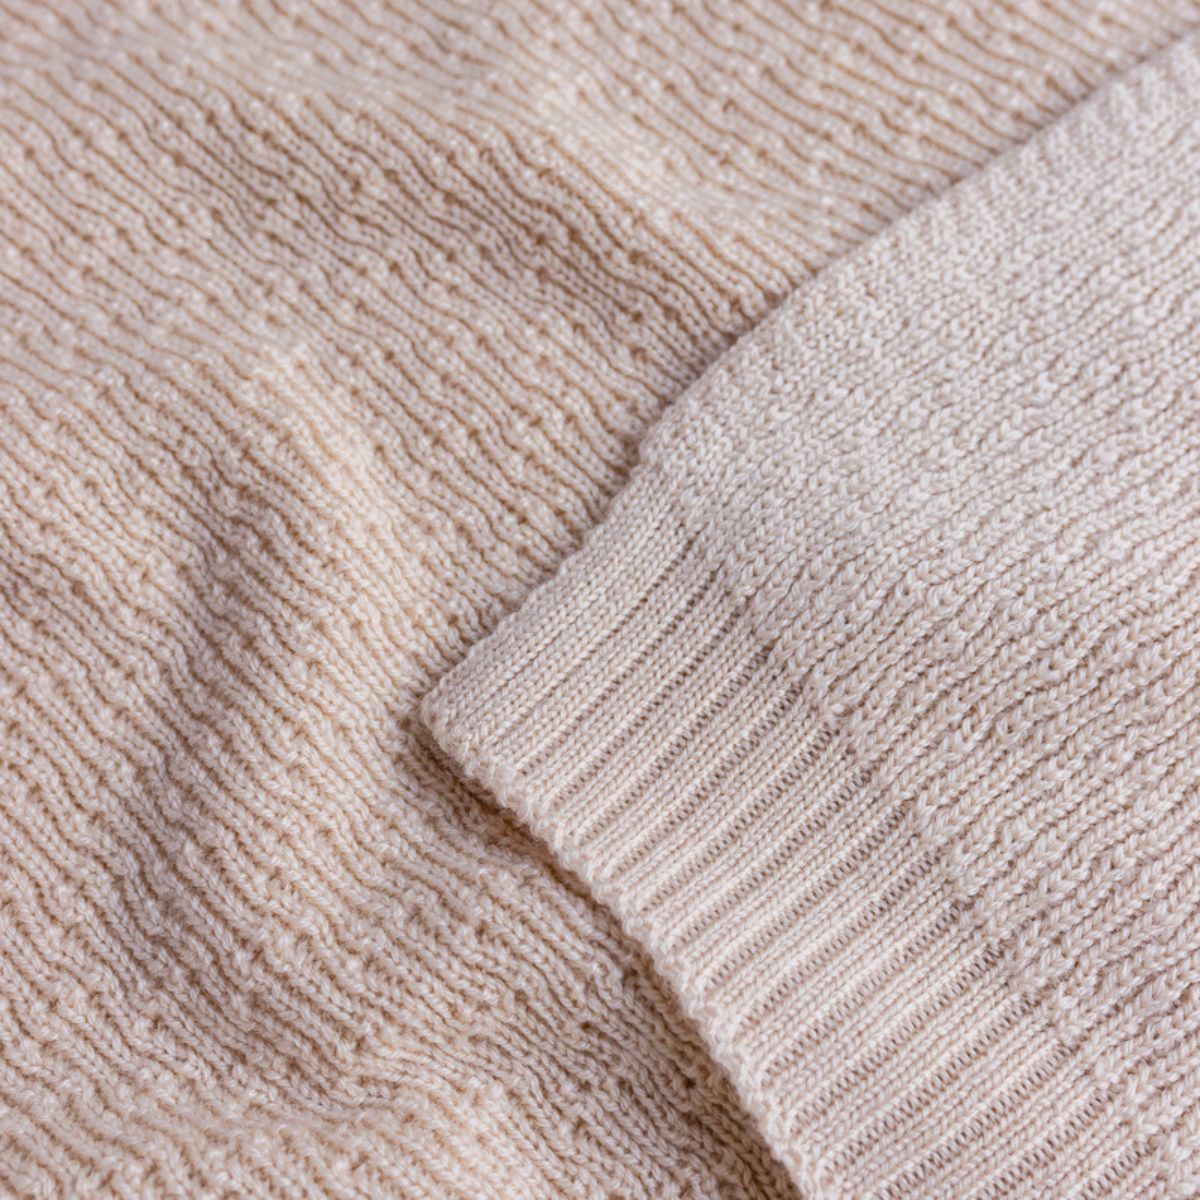 Deken dora van Hvid, in oat, biedt warmte en comfort voor je baby met zacht merino lamswol. Ribgebreid, zacht en warm. Een stijlvolle deken. In diverse kleuren. VanZus